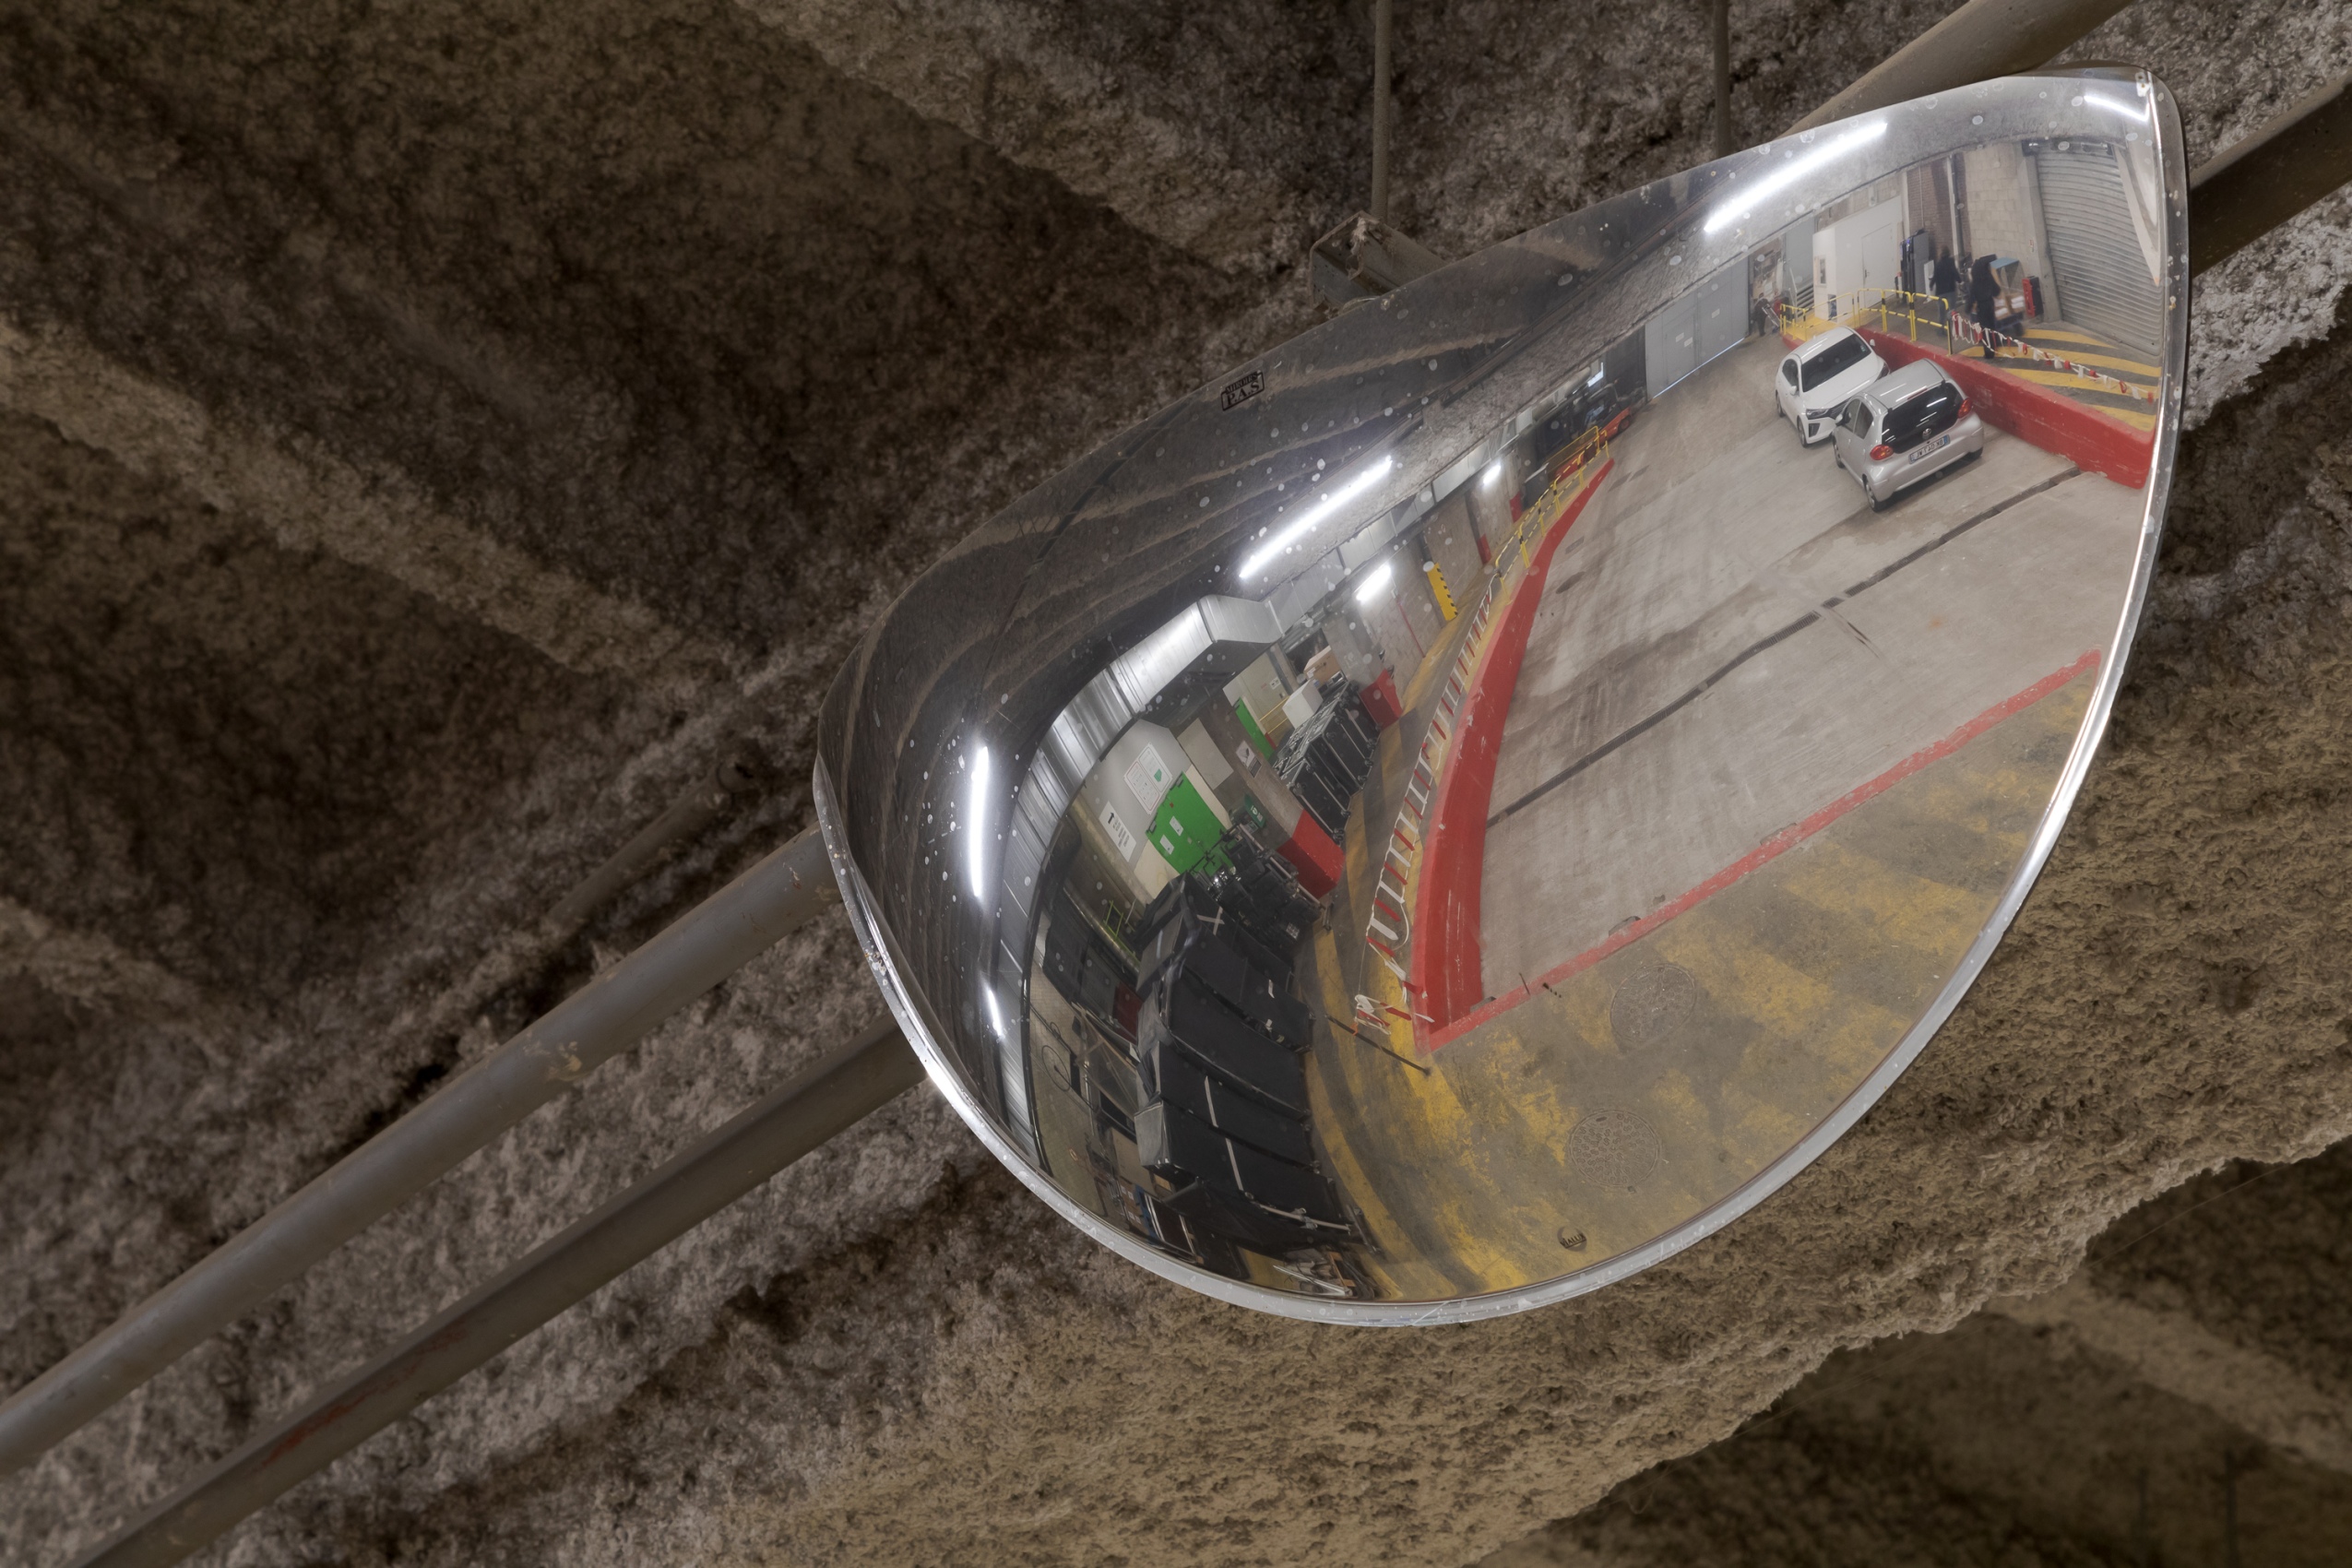 Un miroir courbe en métal est suspendu aux poutres floquées du quai de déchargement : on aperçoit dans le miroirs les lignes jaunes de la signalétique au sol ainsi que plusieurs voitures garées. 